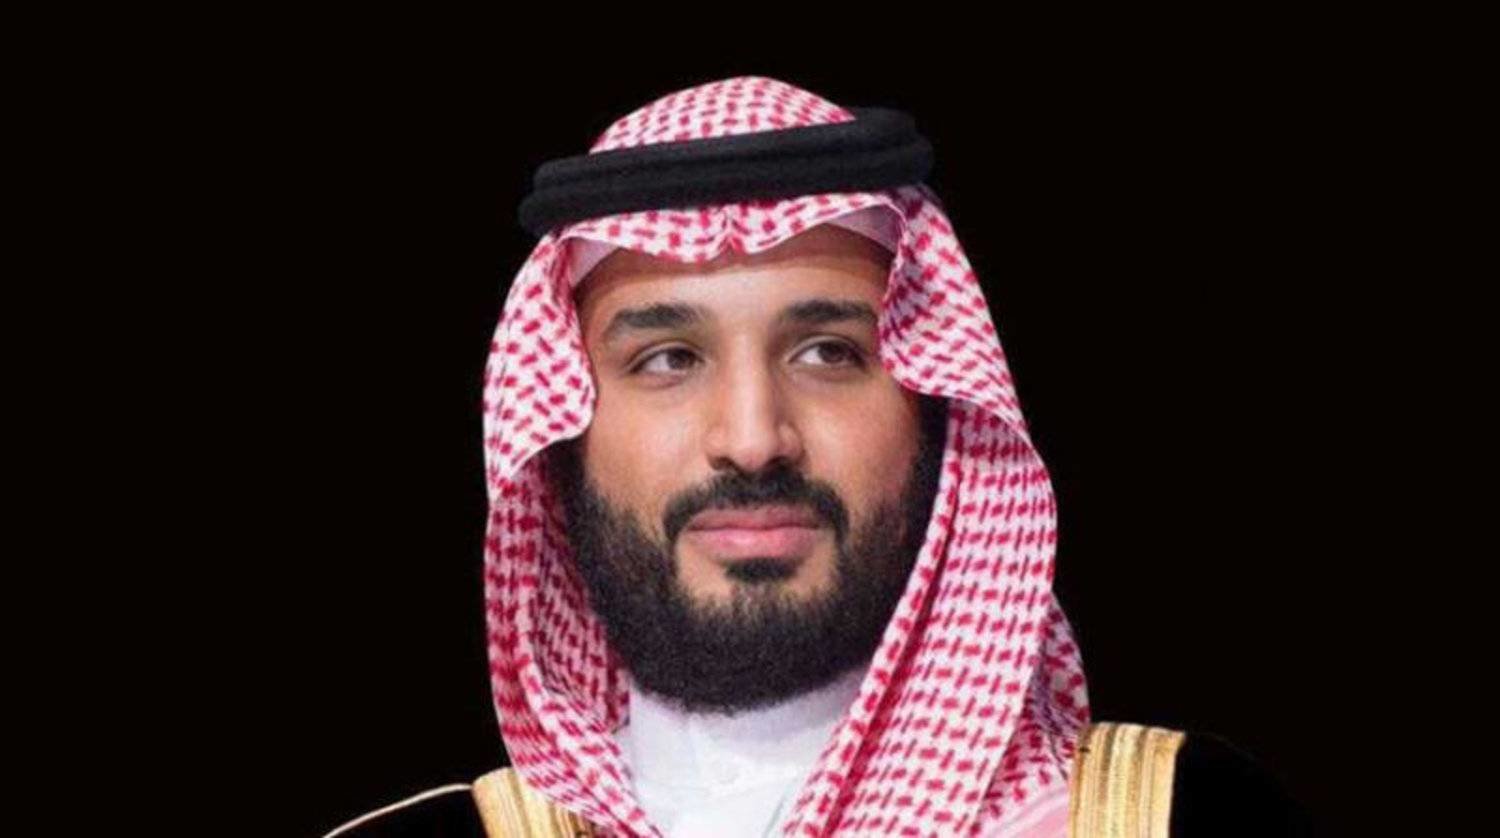 ولي العهد السعودي الأمير محمد بن سلمان بن عبد العزيز (واس)